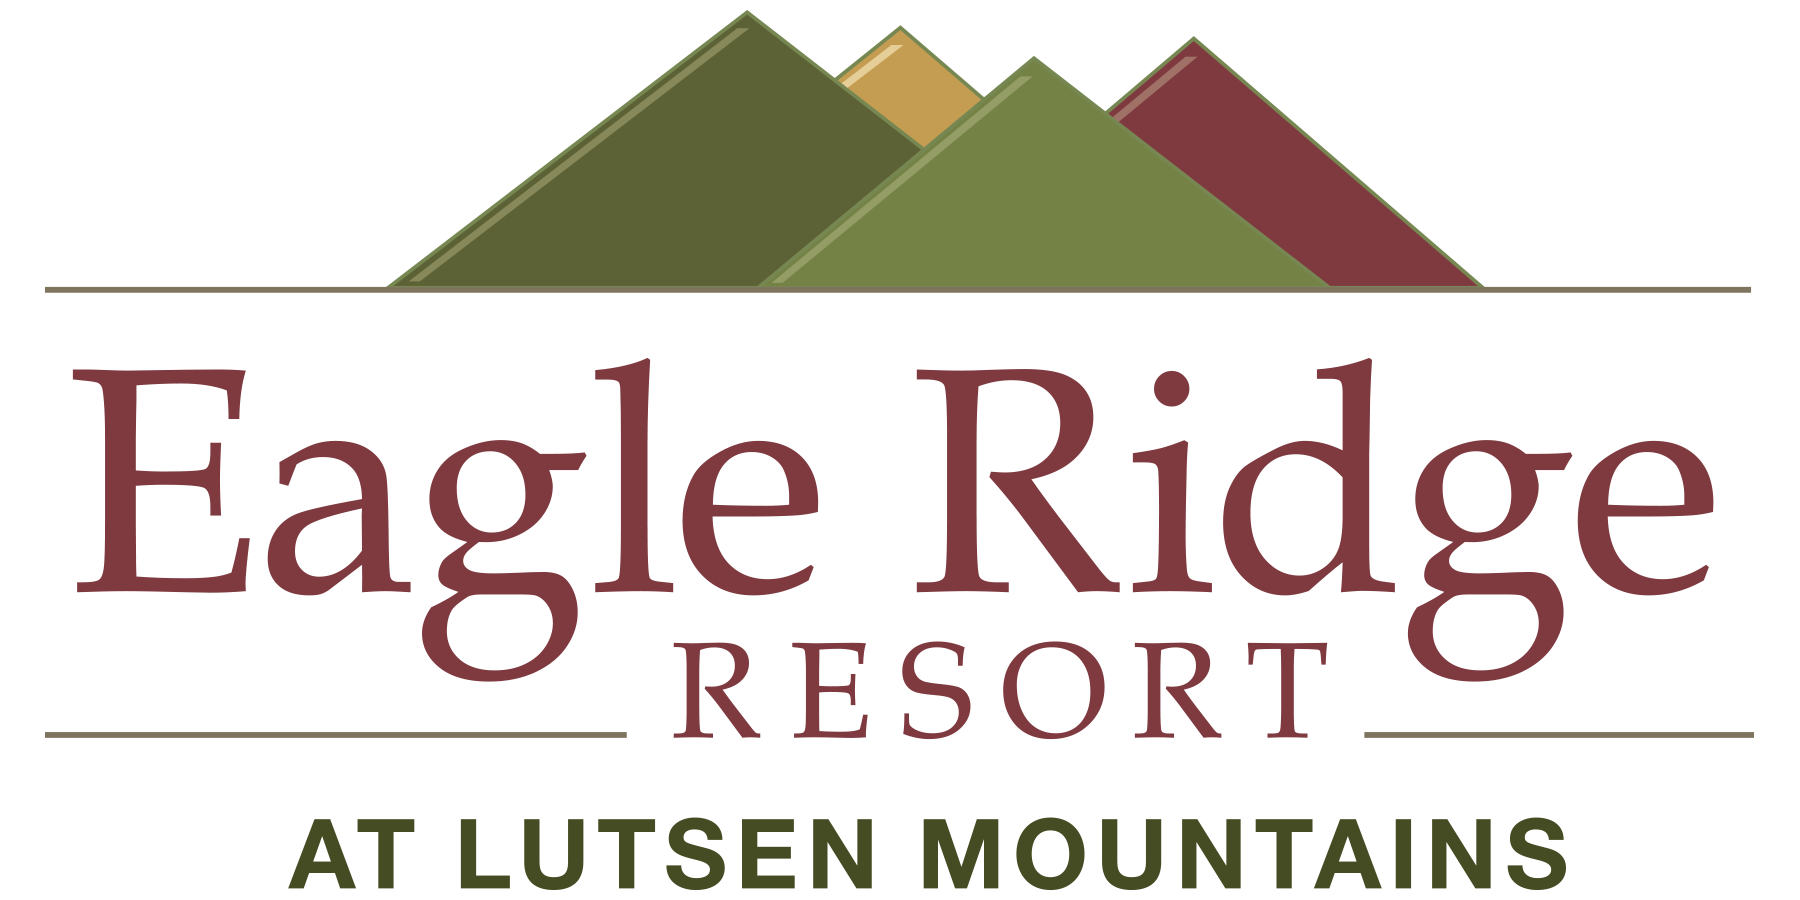 Eagle Ridge Resort At Lutsen Mountains